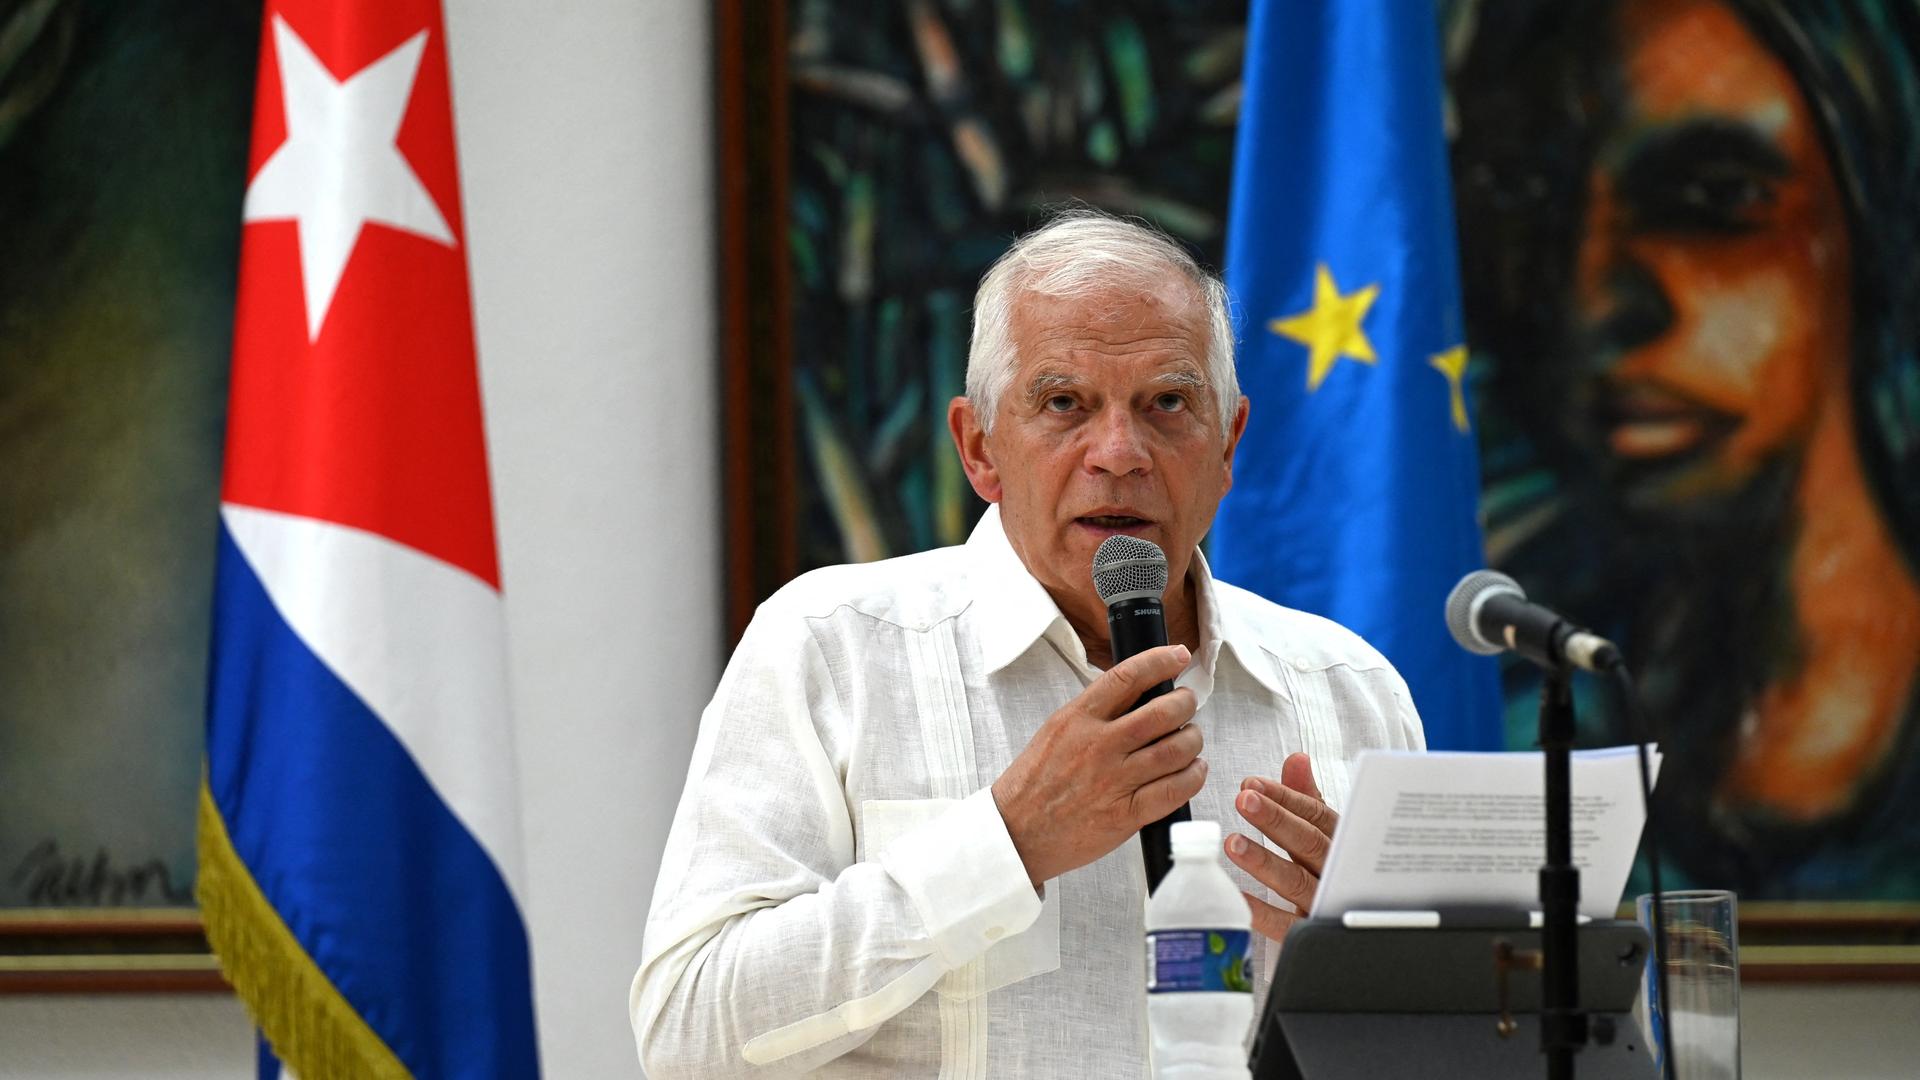 Der EU-Außenbeauftragte Borrell spricht in Havanna in ein Mikrofon. Im Hintergrund zu sehen: die kubanische und die EU-Flagge.